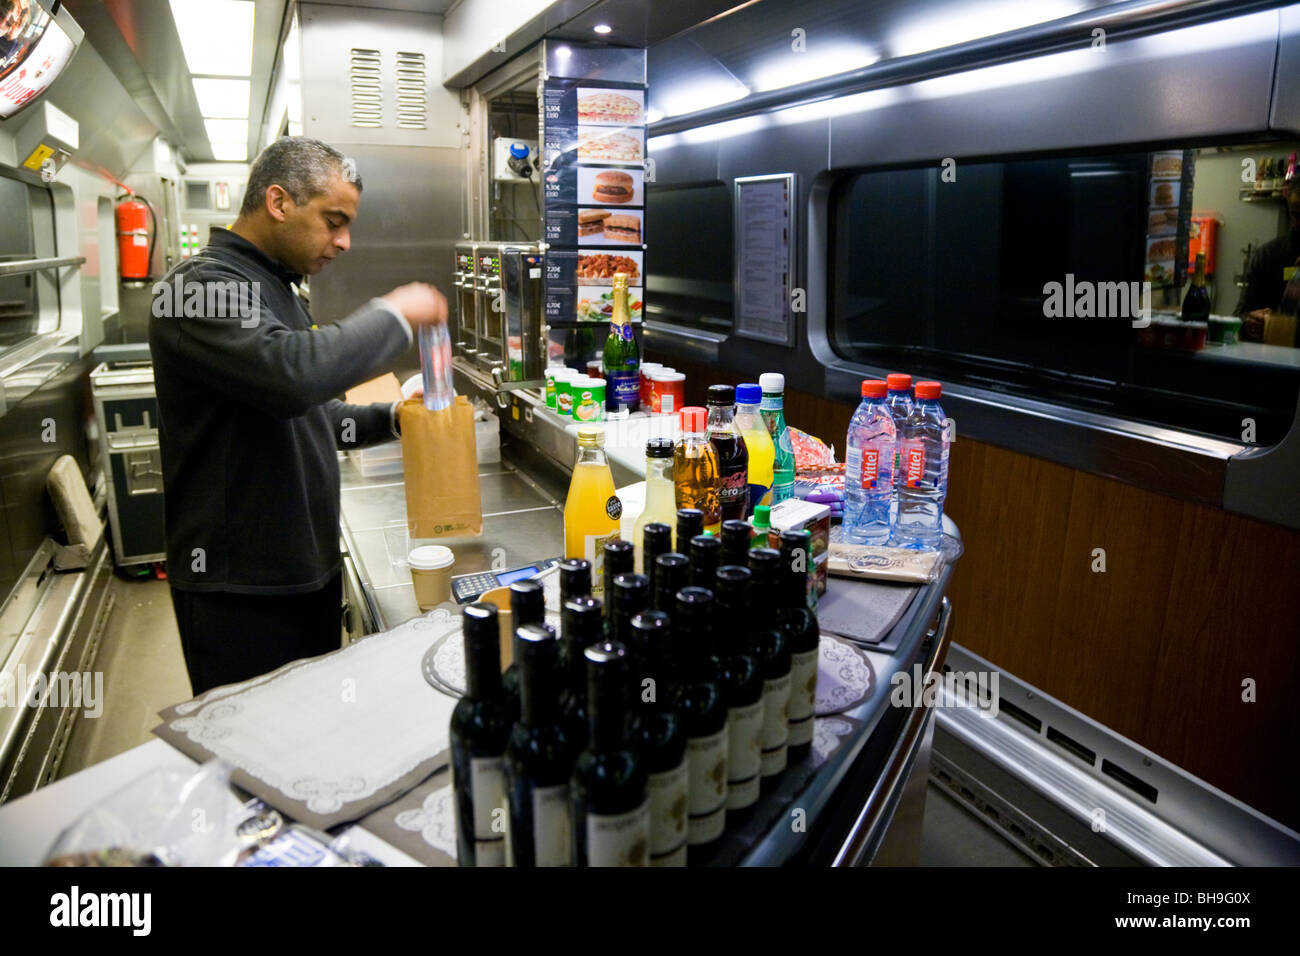 Anzeige des Getränks / Weinflaschen im Buffet Wagen mit dem Eurostar Zug nach Paris. Stockfoto